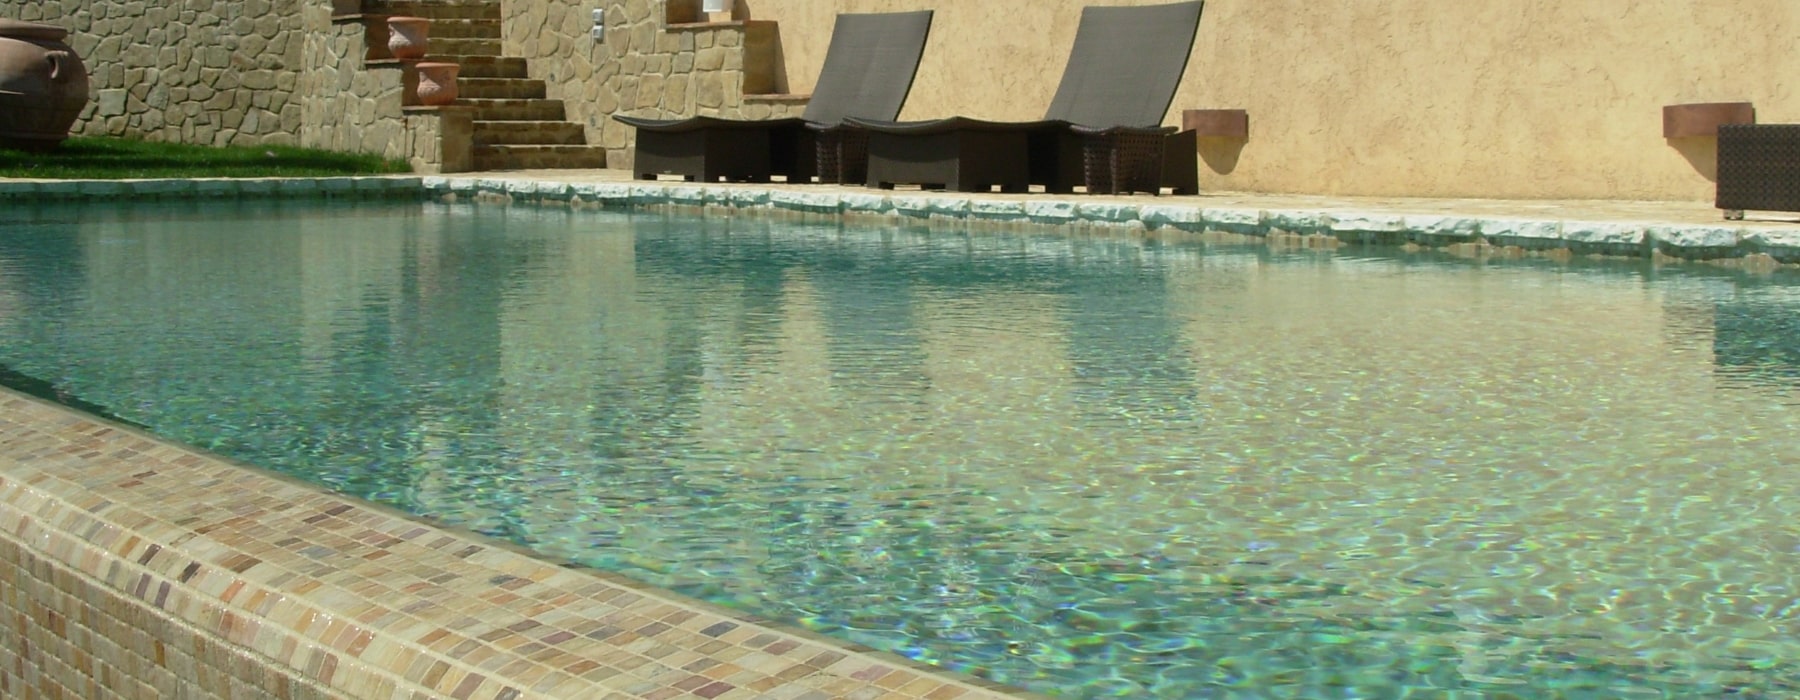 Realizzazione piscine a sfioro in Toscana Gardenpool